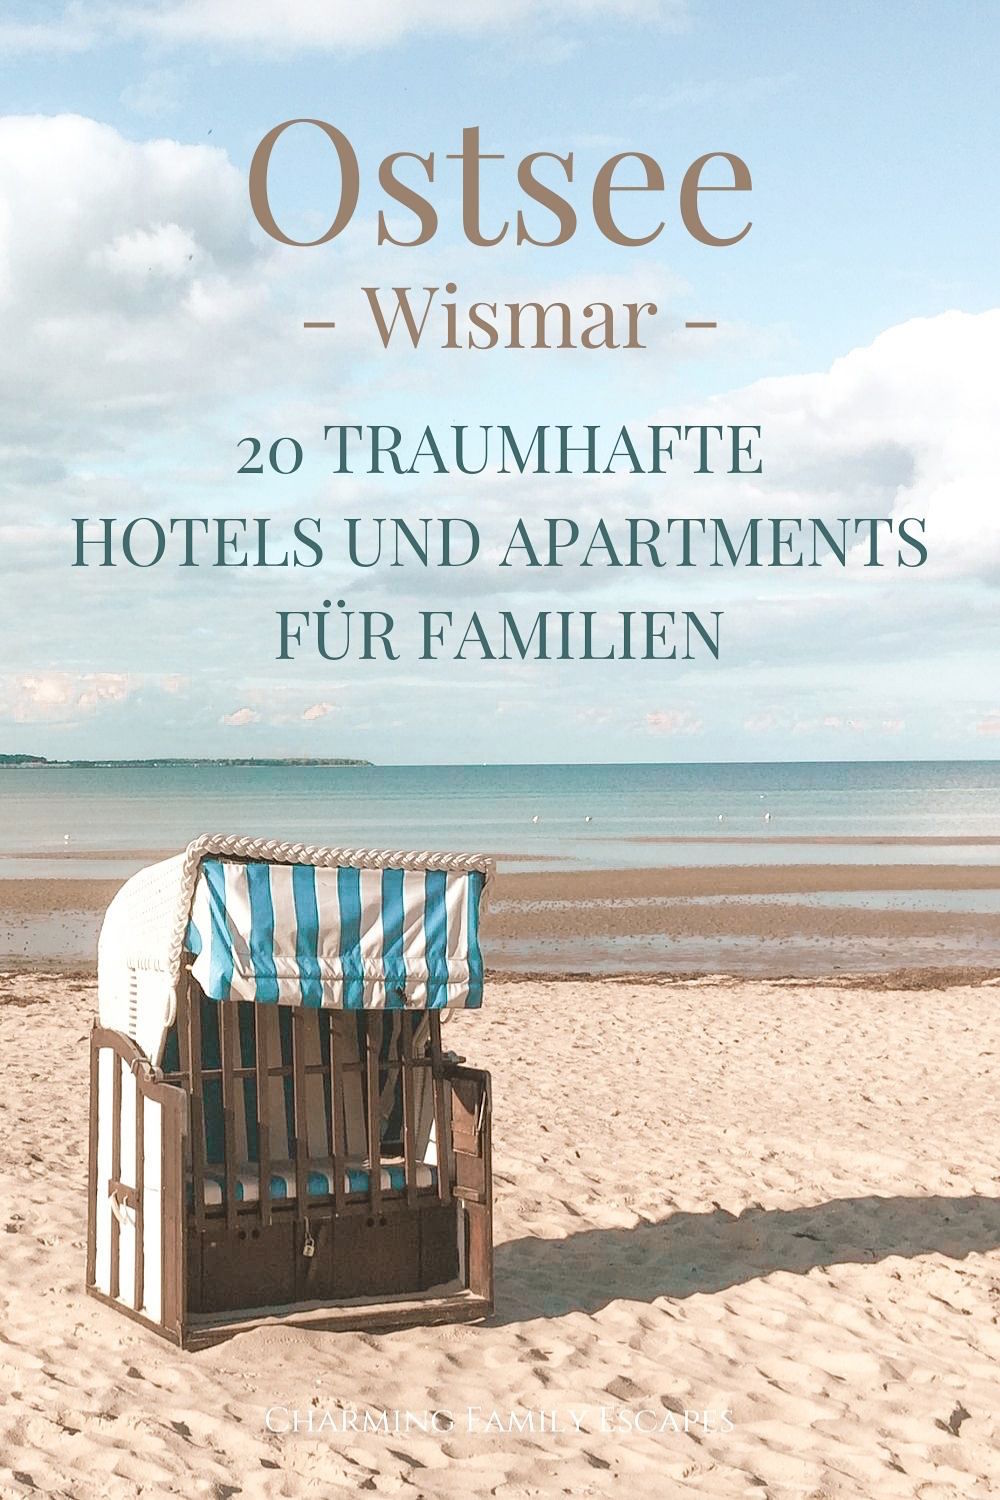 Urlaub an der Ostsee - 20 Traumhafte Hotels und Apartments für Familien in Wismar